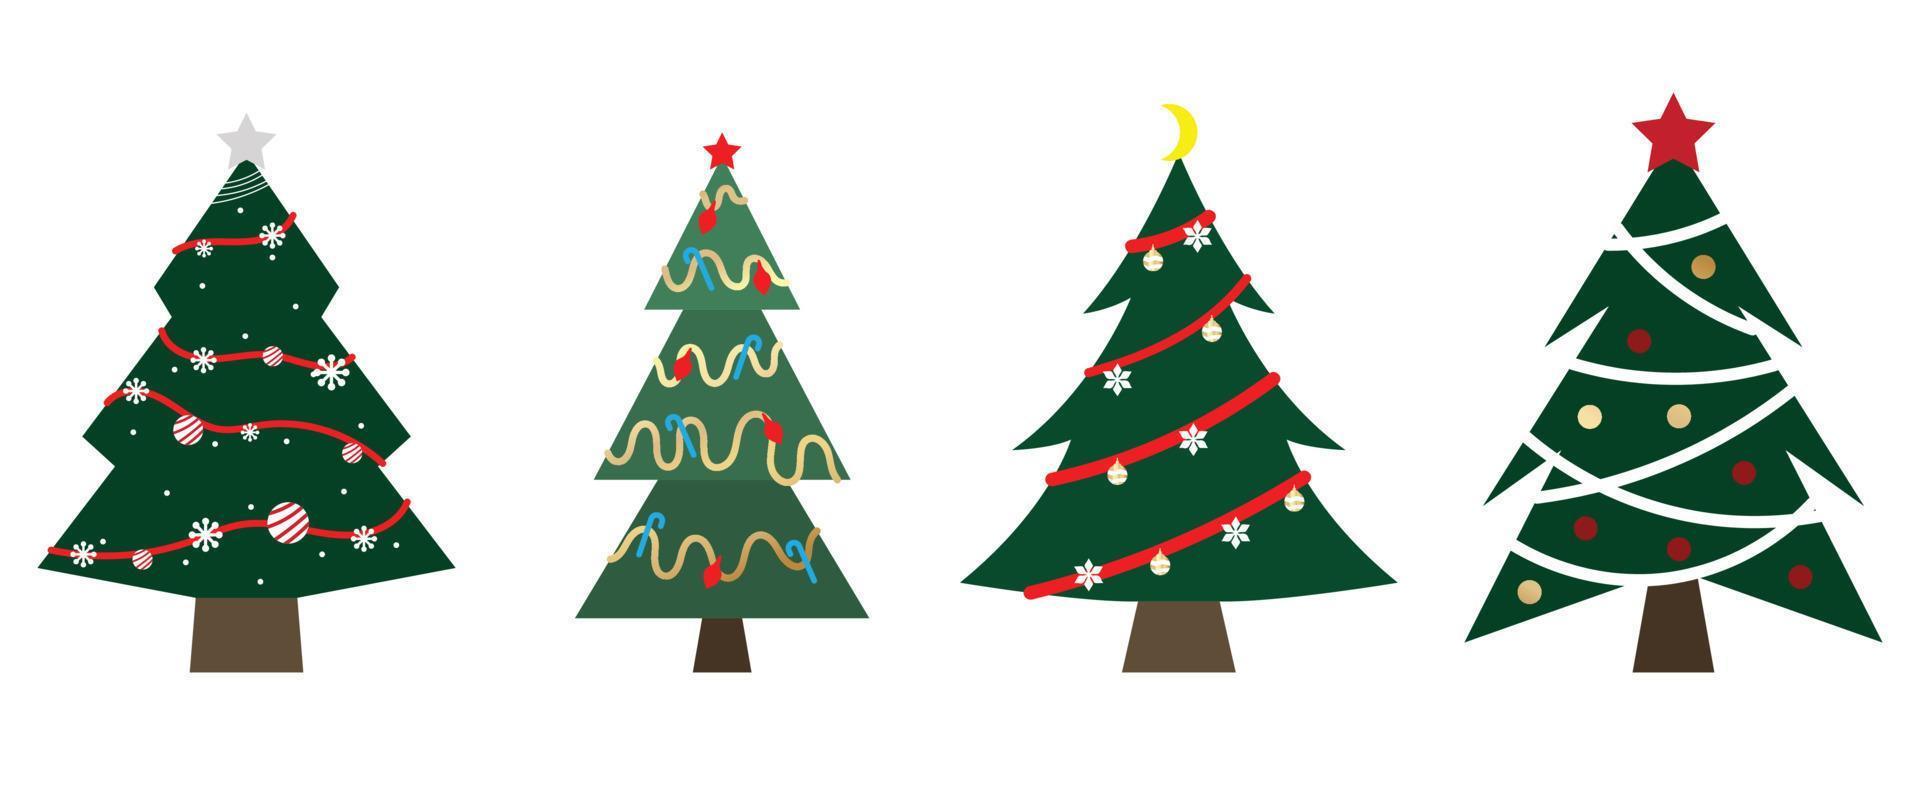 satz geschmückter weihnachtsbäume vektor. Sammlung von dekorativen Weihnachtsbäumen mit Girlande, Lametta, Kugeln, Stern auf weißem Hintergrund. designillustration für dekoration, karte, aufkleber, poster. vektor